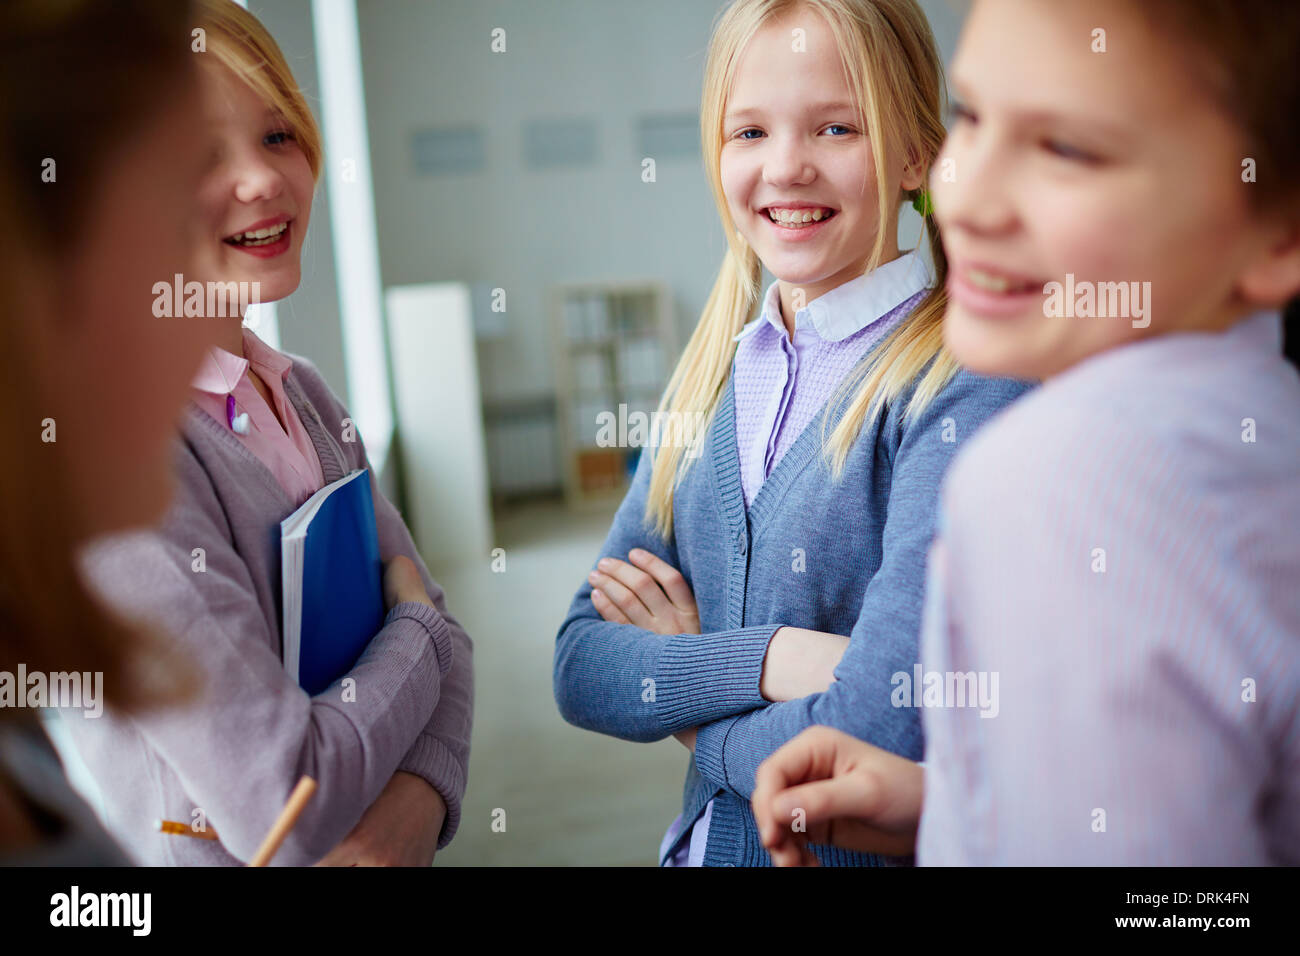 Portrait of three happy schoolgirls and schoolboy talking during school break Stock Photo